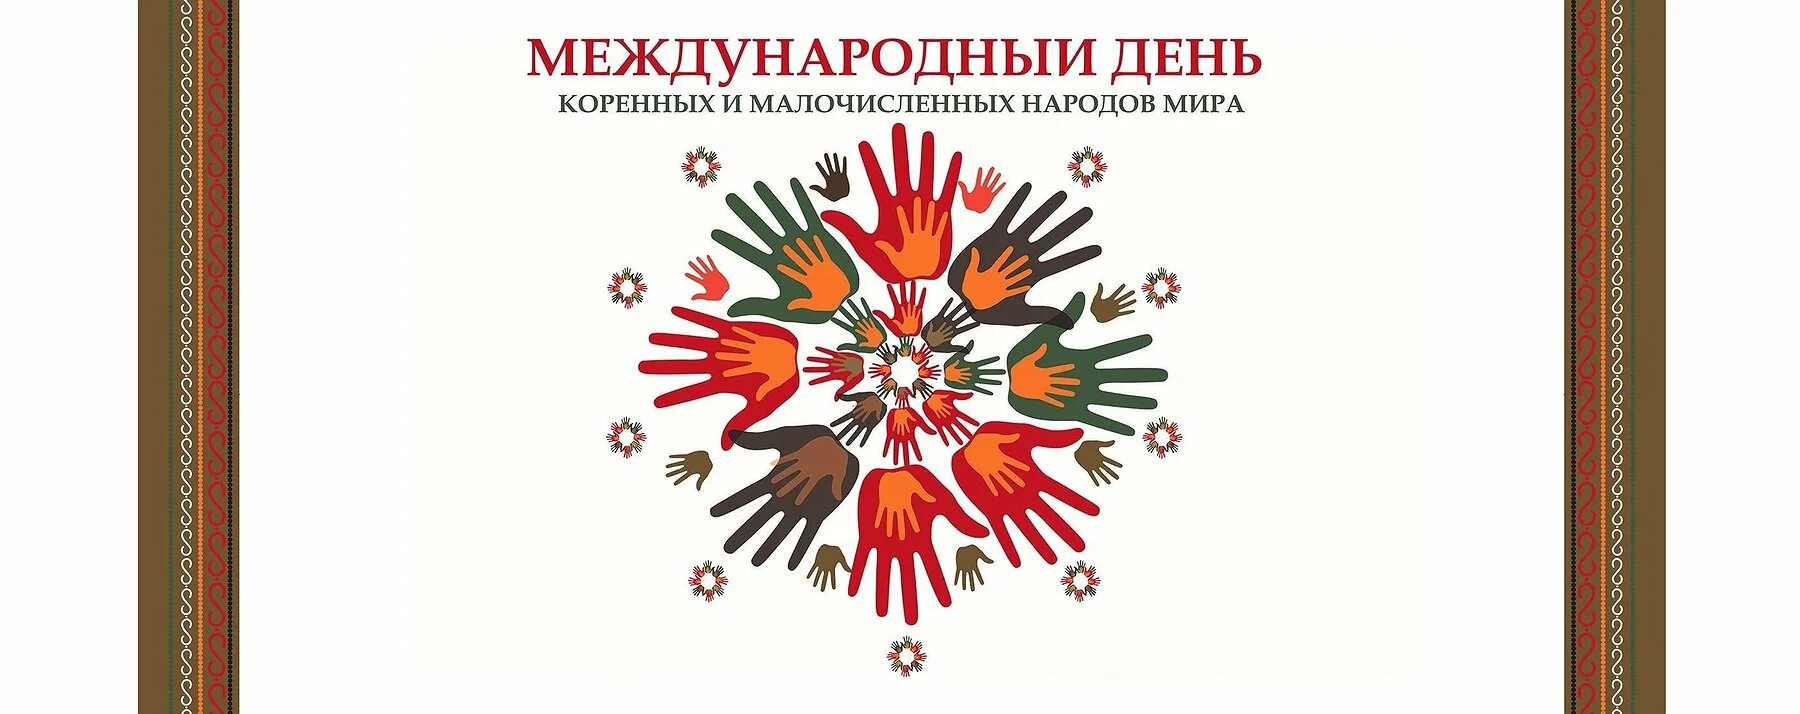 С праздником коренных народов. Международный день коренных народов поздравление. День коренные народы